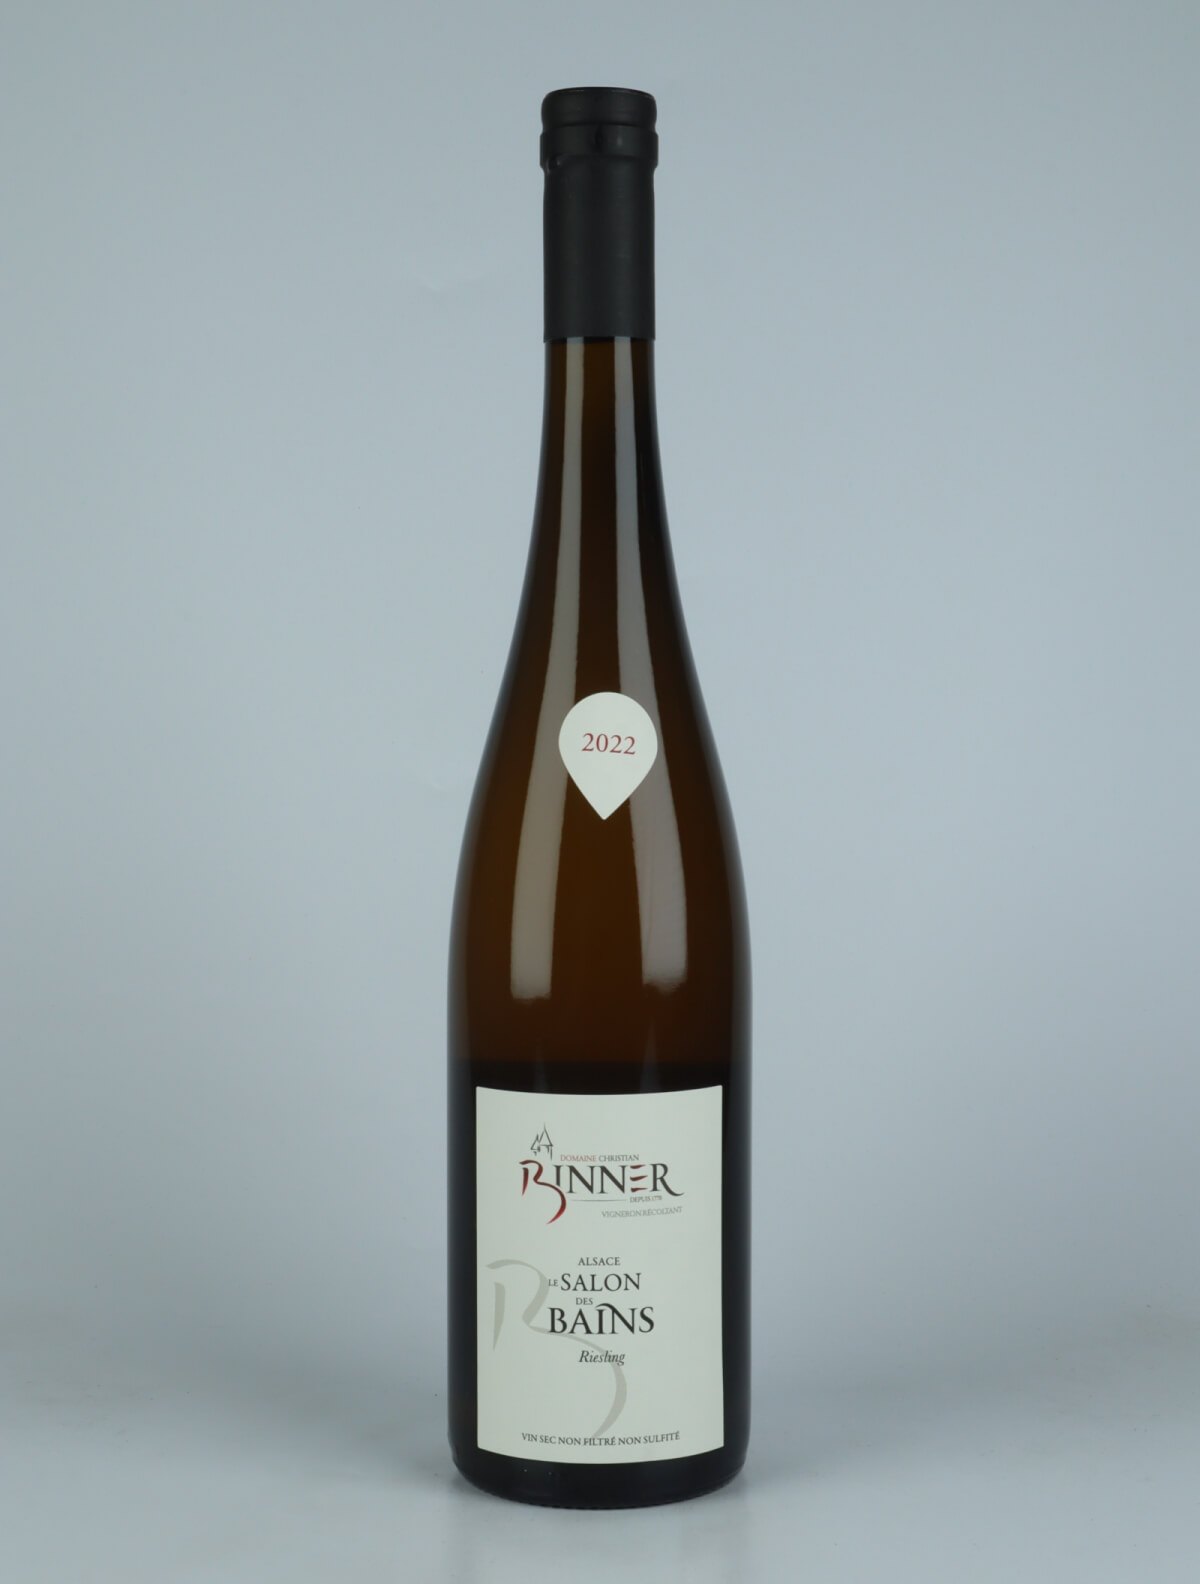 En flaske 2022 Riesling - Salon des Bains Hvidvin fra Domaine Christian Binner, Alsace i Frankrig